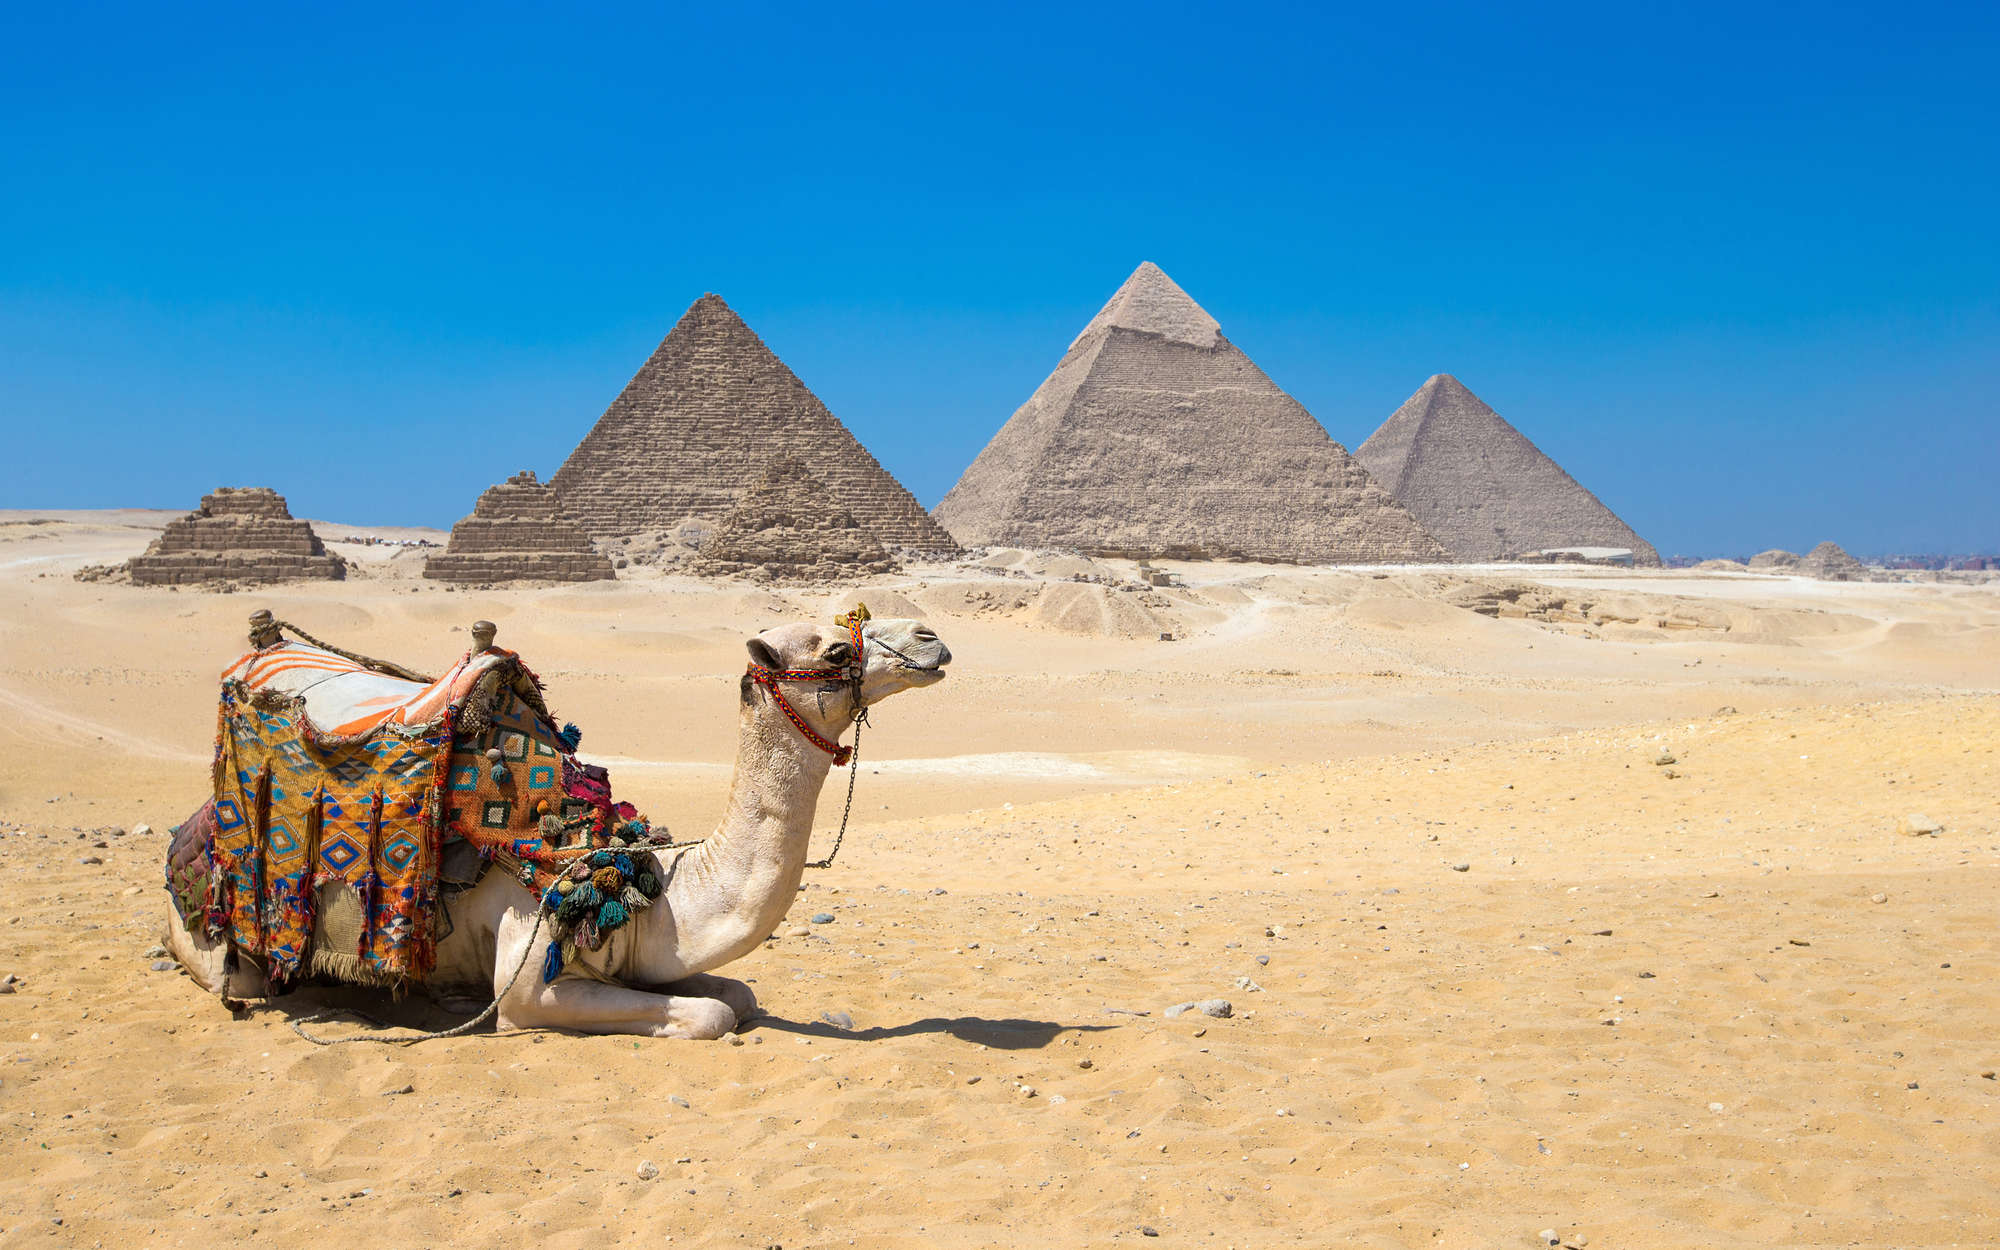             Papel pintable Pirámides de Giza con Camello - Material sin tejer texturado
        